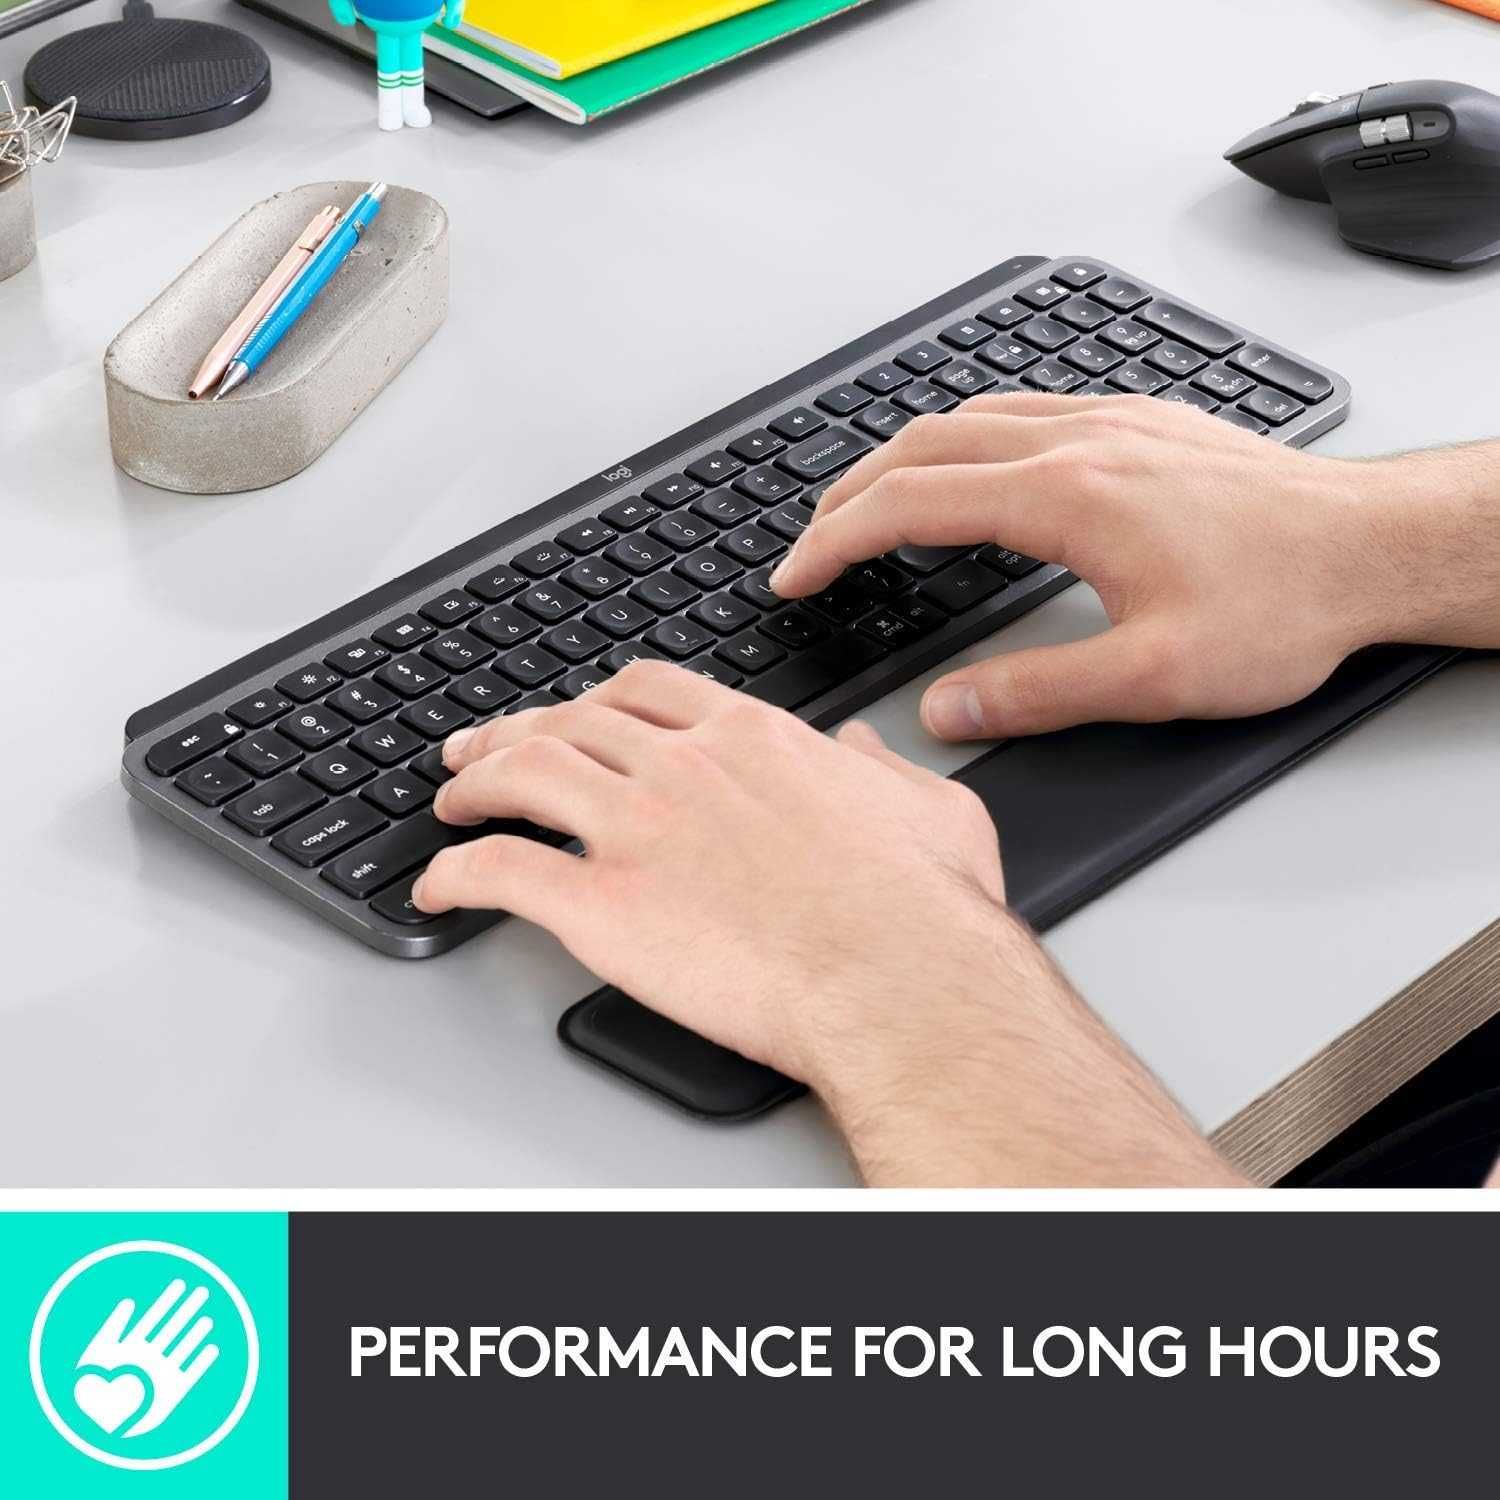 НОВАЯ Logitech MX Palm Wrist Rest Подставка Для Запястья К Клавиатуре